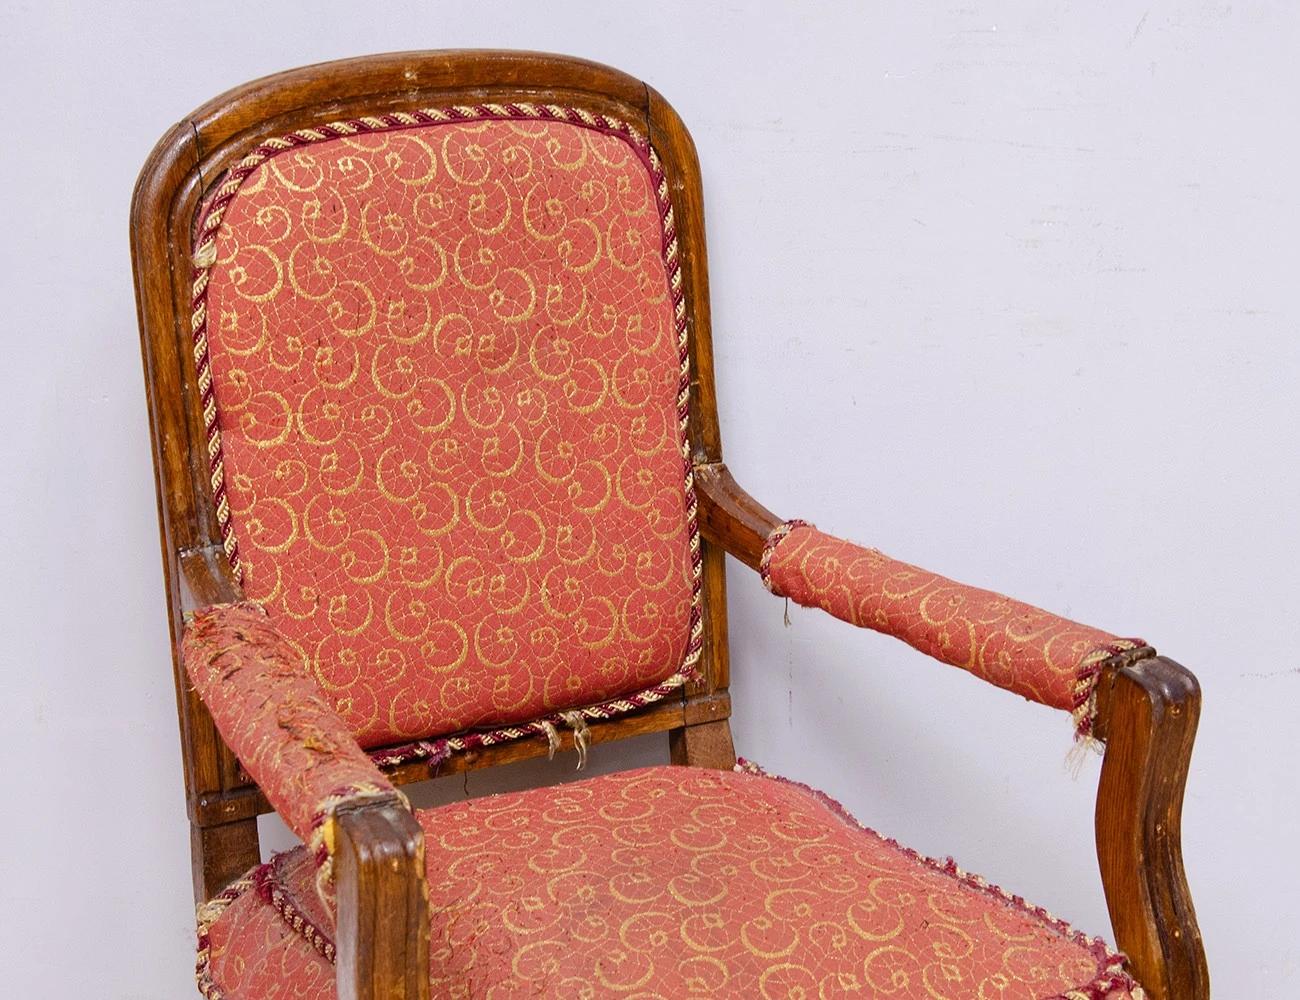 Реставрация дубового кресла 19 века